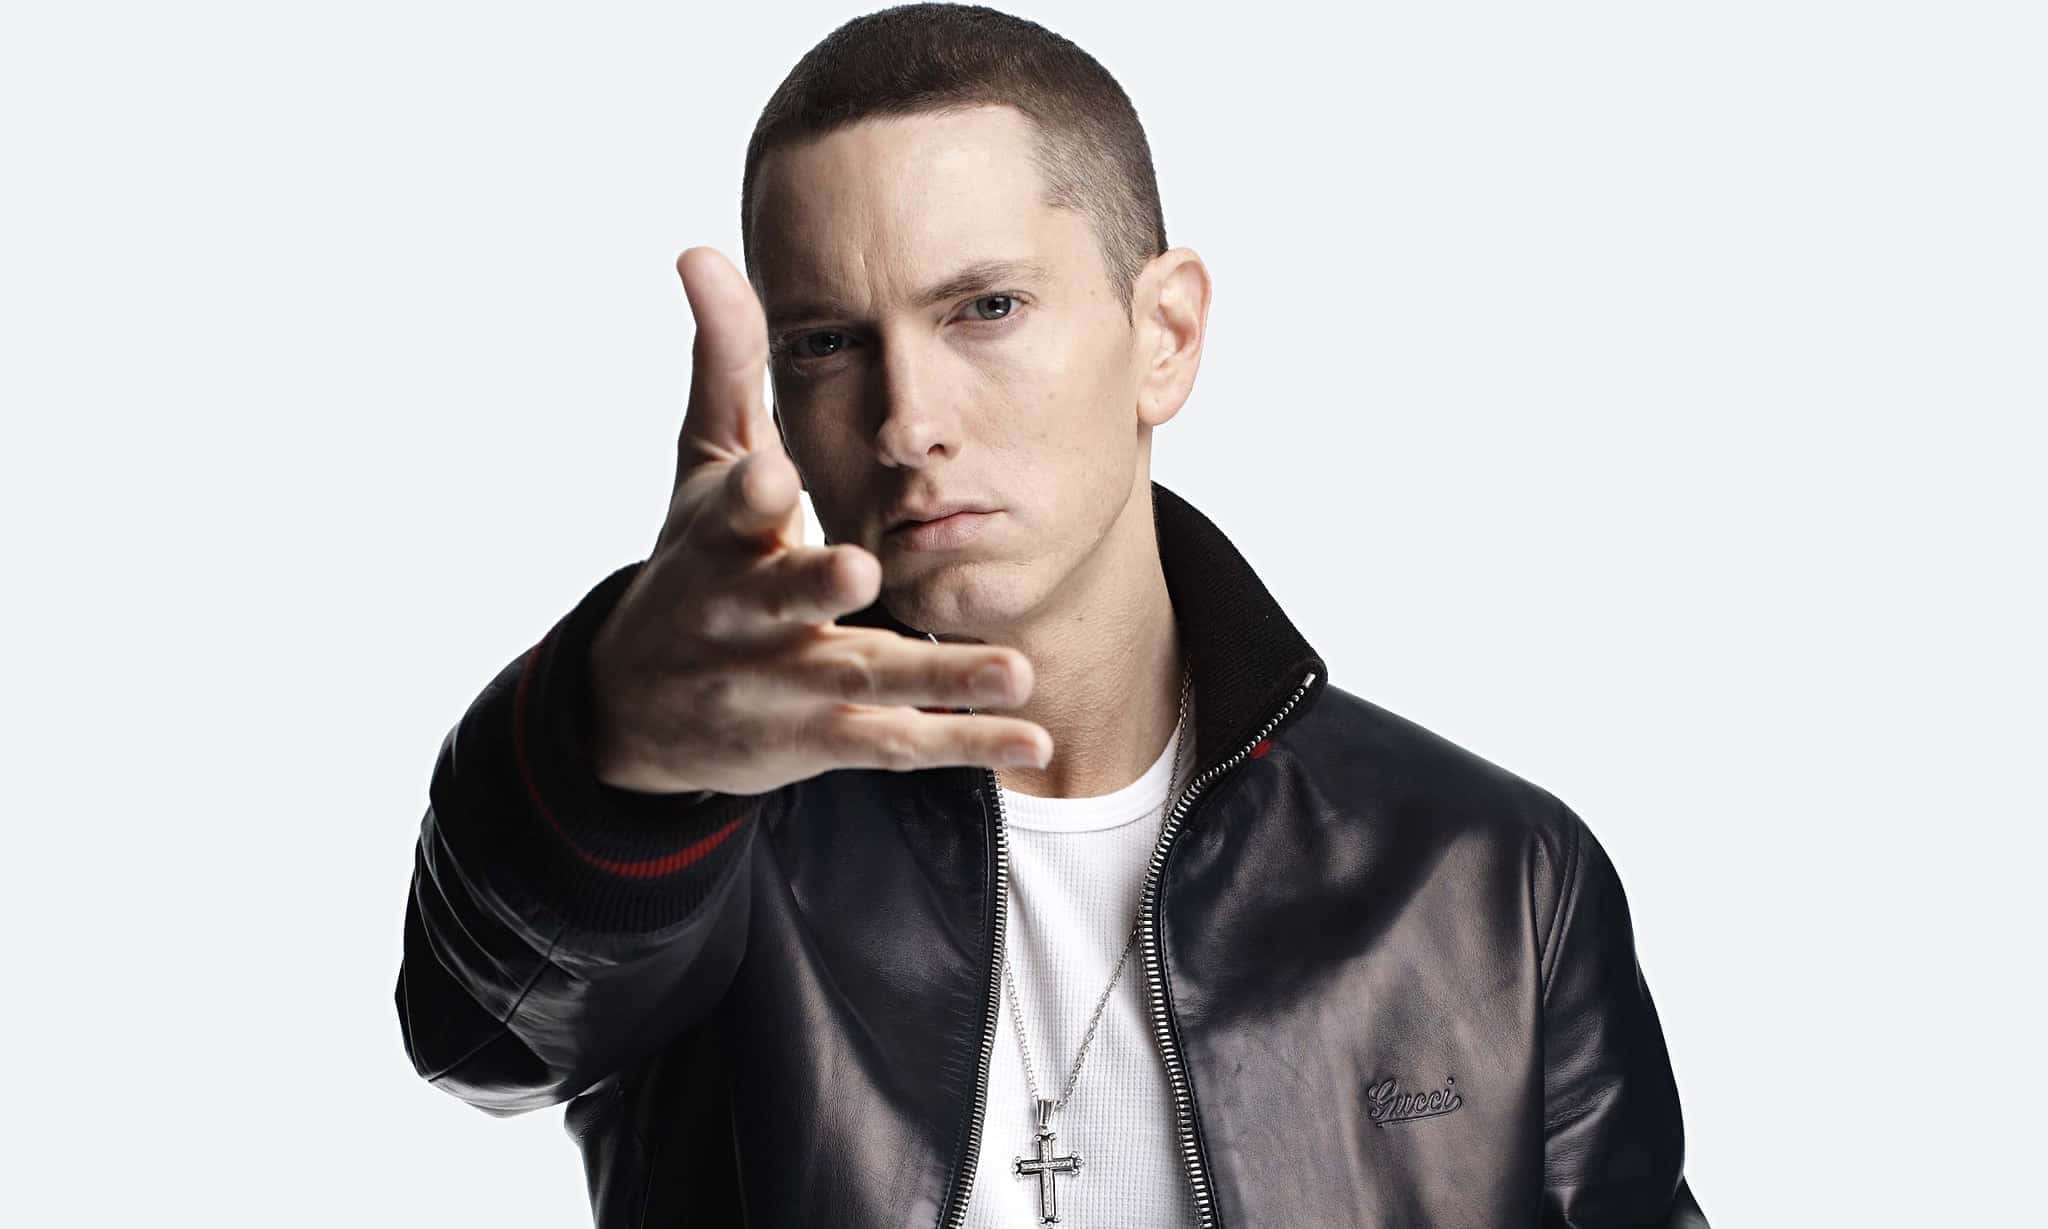 Eminem - Iconic Rapper and Hip Hop Artist